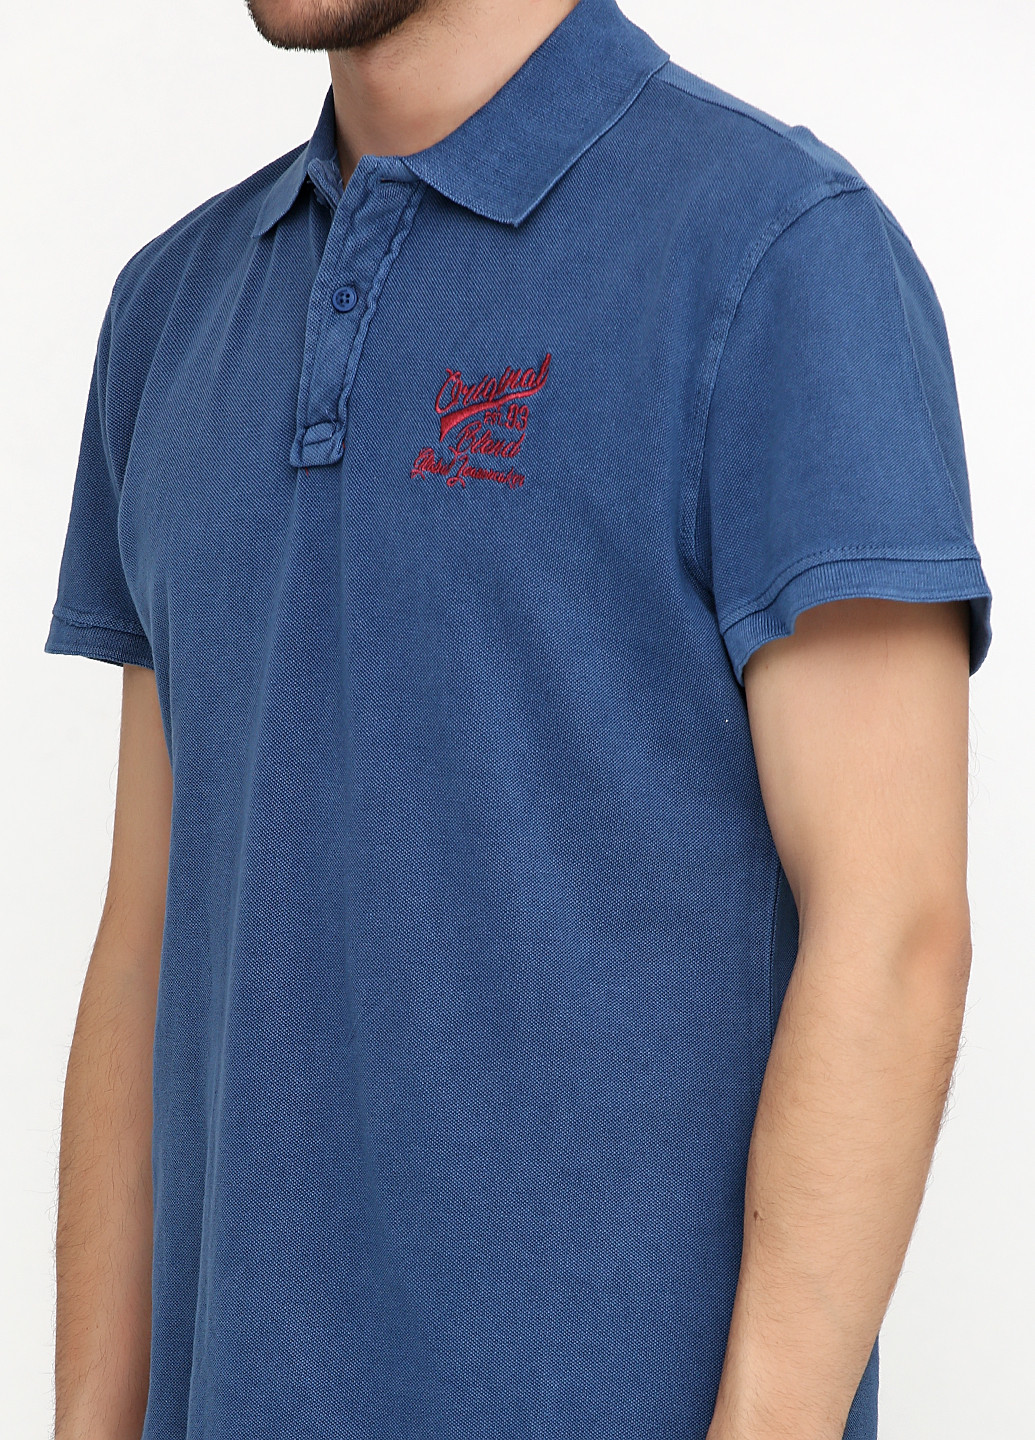 Синяя футболка-поло для мужчин Blend с надписью